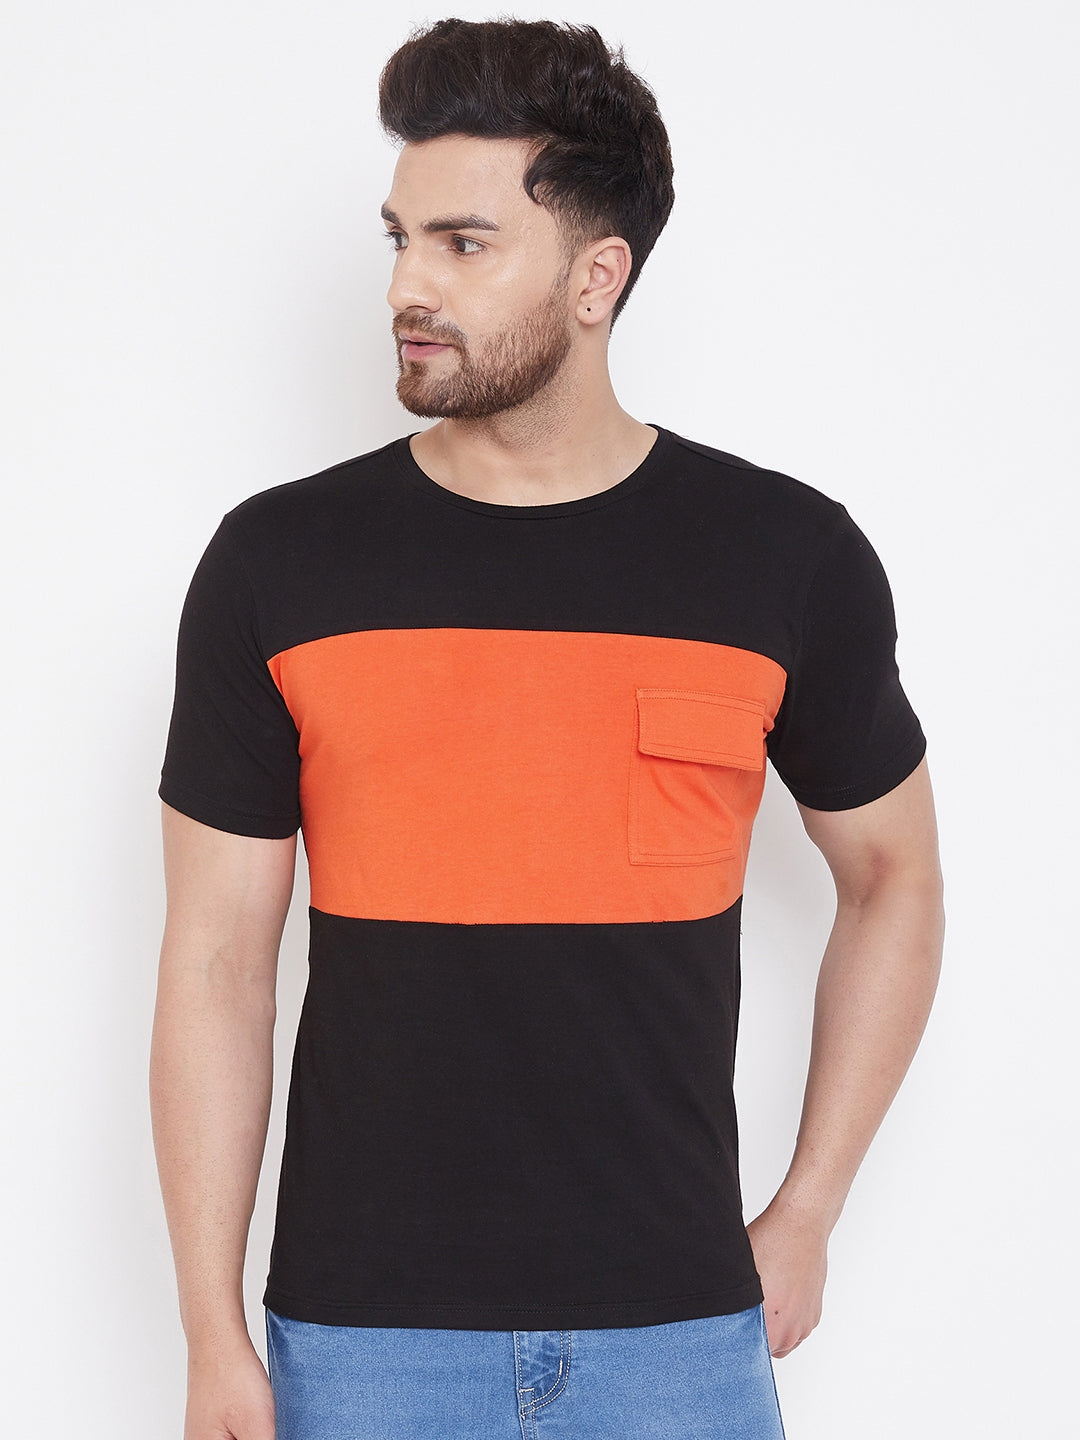 Black/Orange Men's Half Sleeves Round Neck T-Shirt